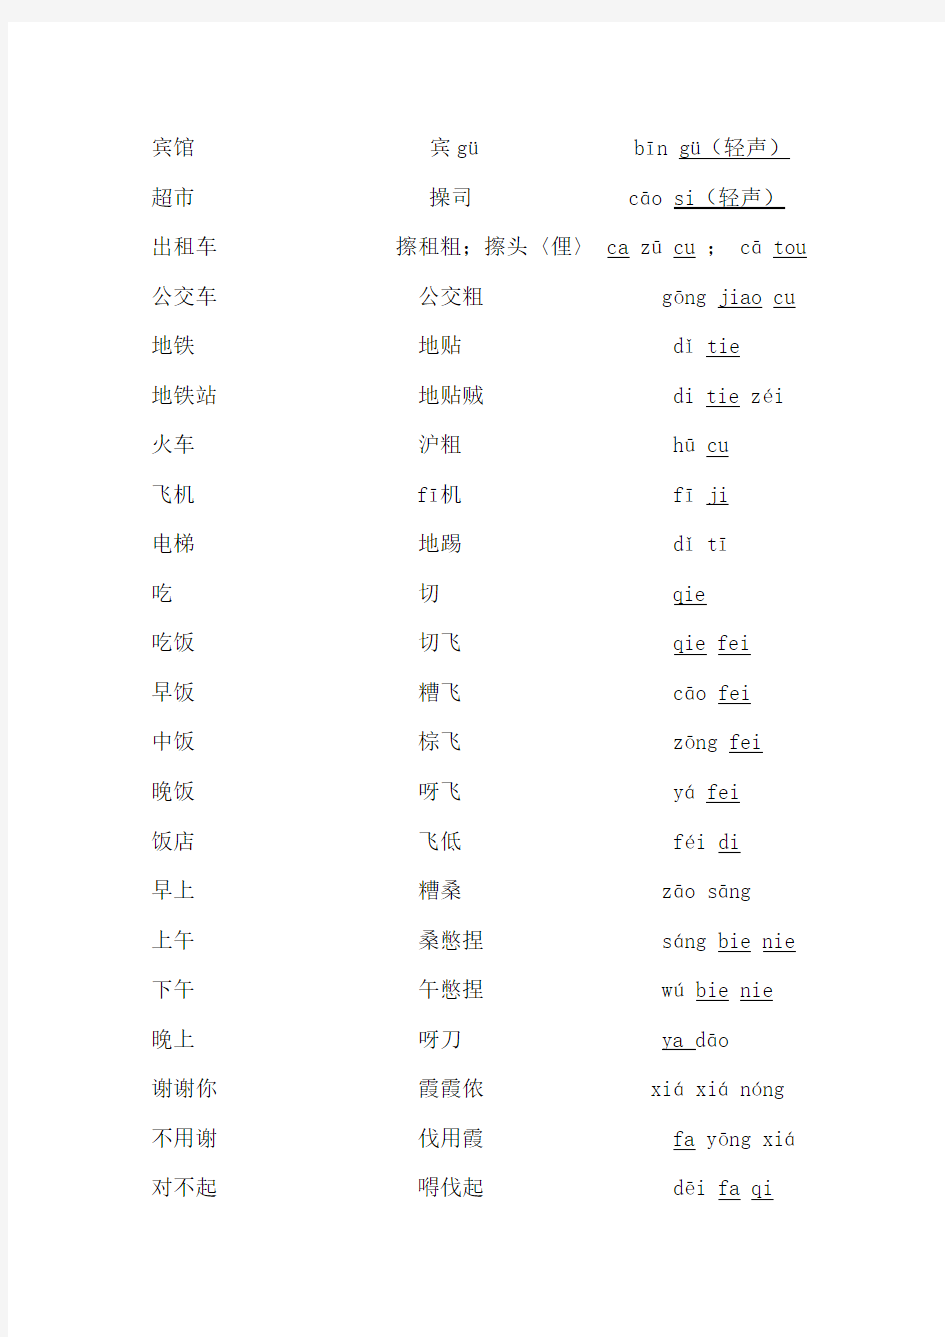 上海方言日常用语